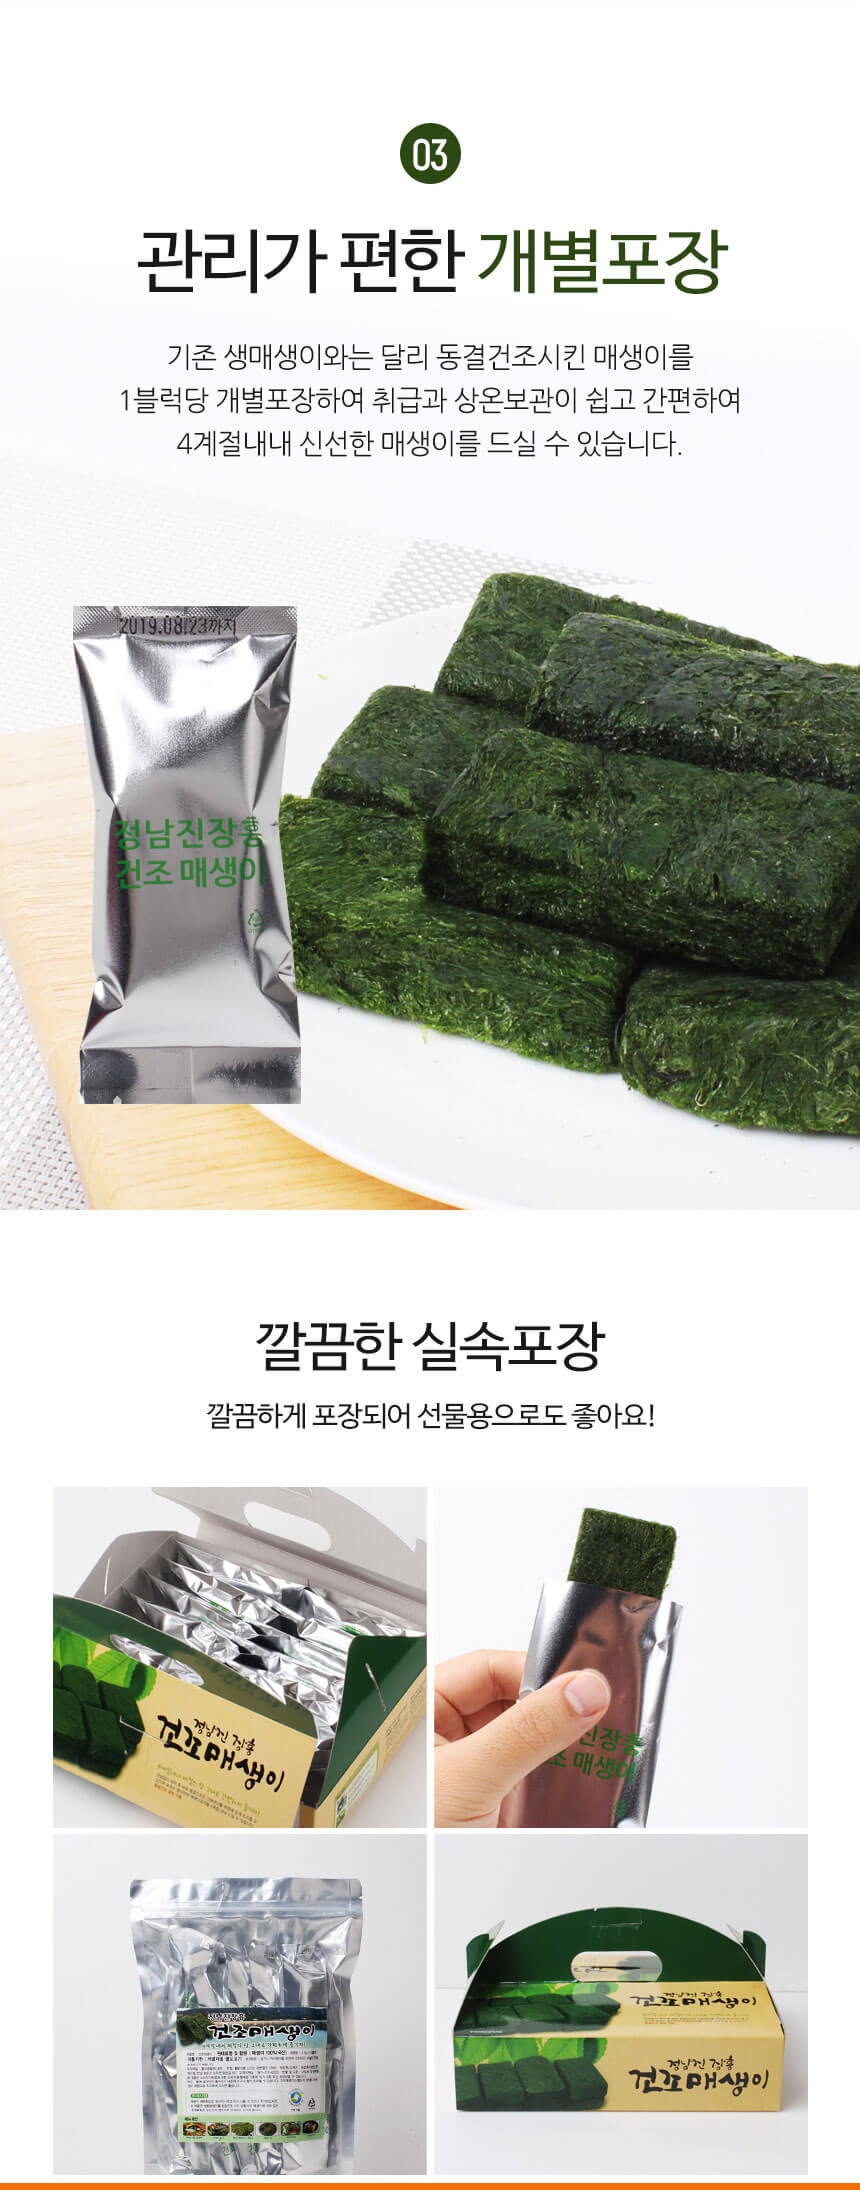 韓國食品-정남진장흥 건조매생이 (20팩)